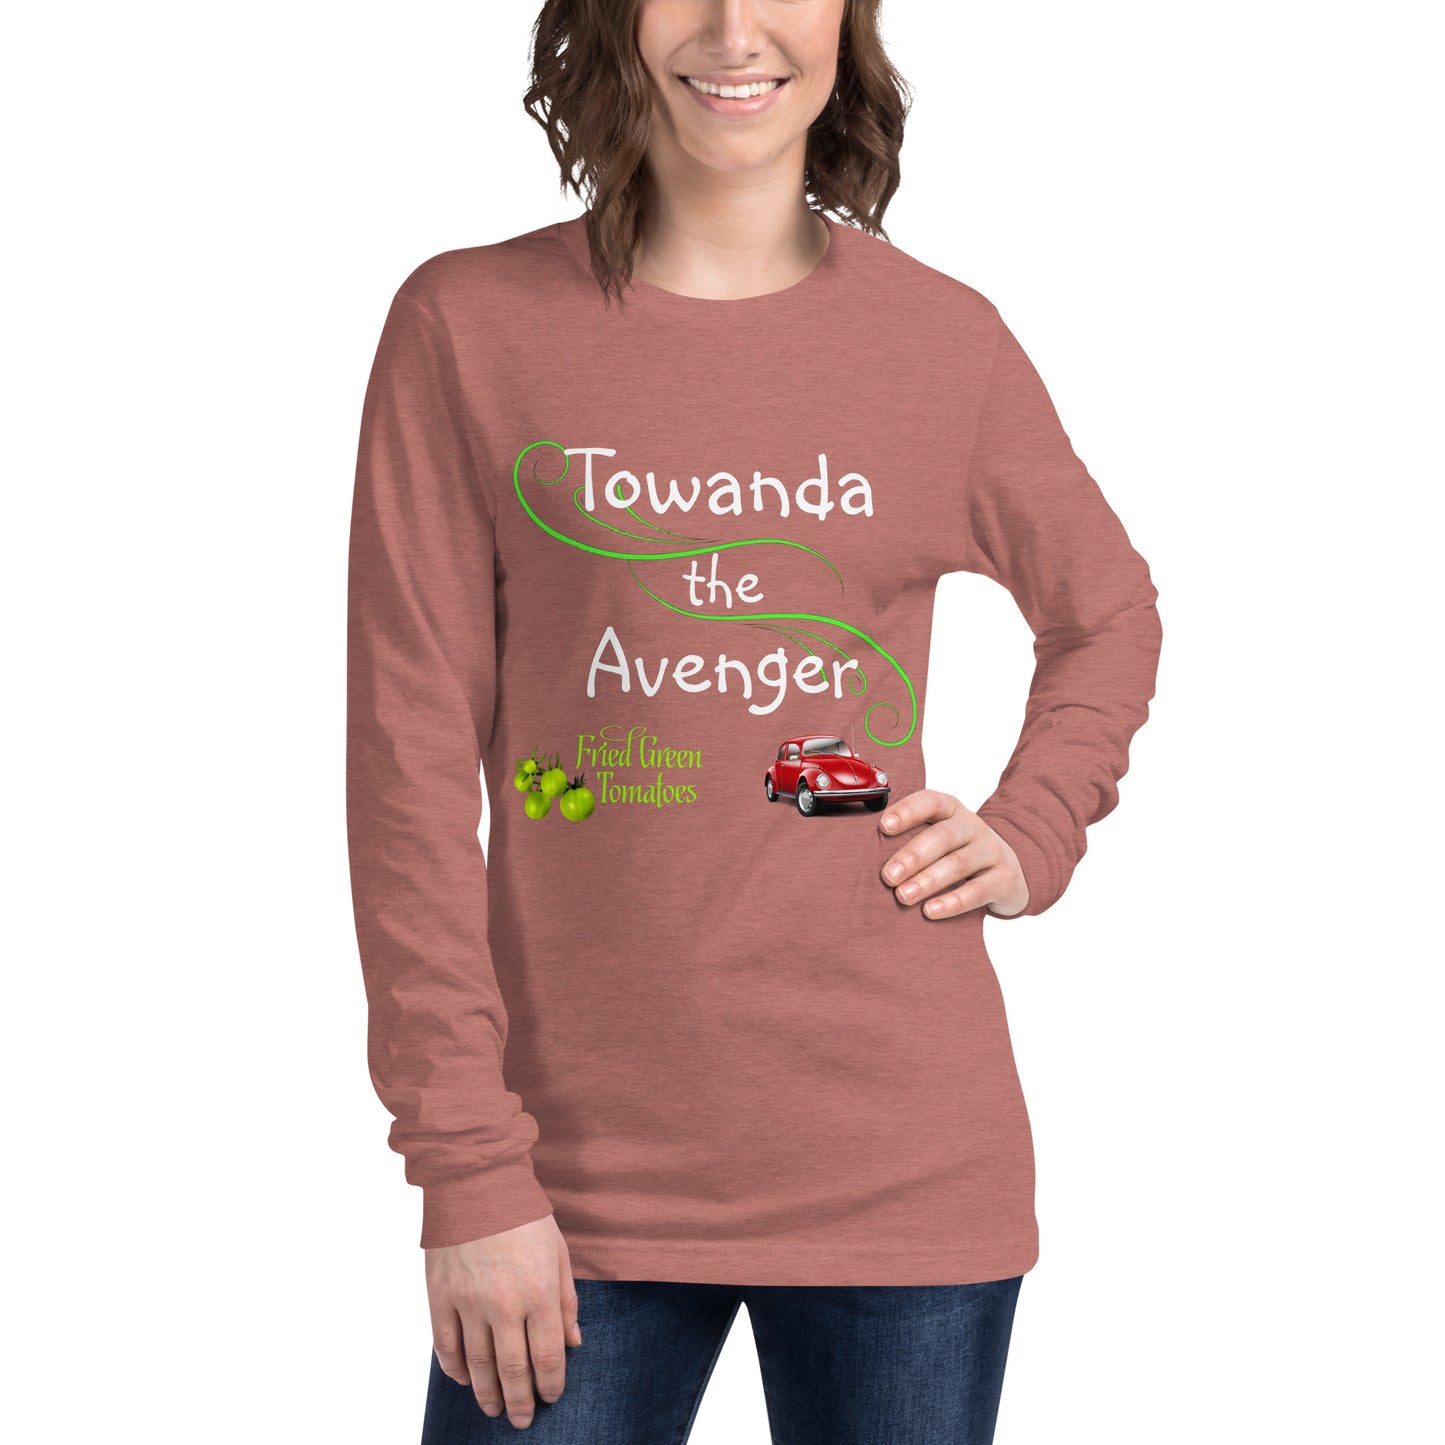 Towanda the Avenger Long Sleeve Tee